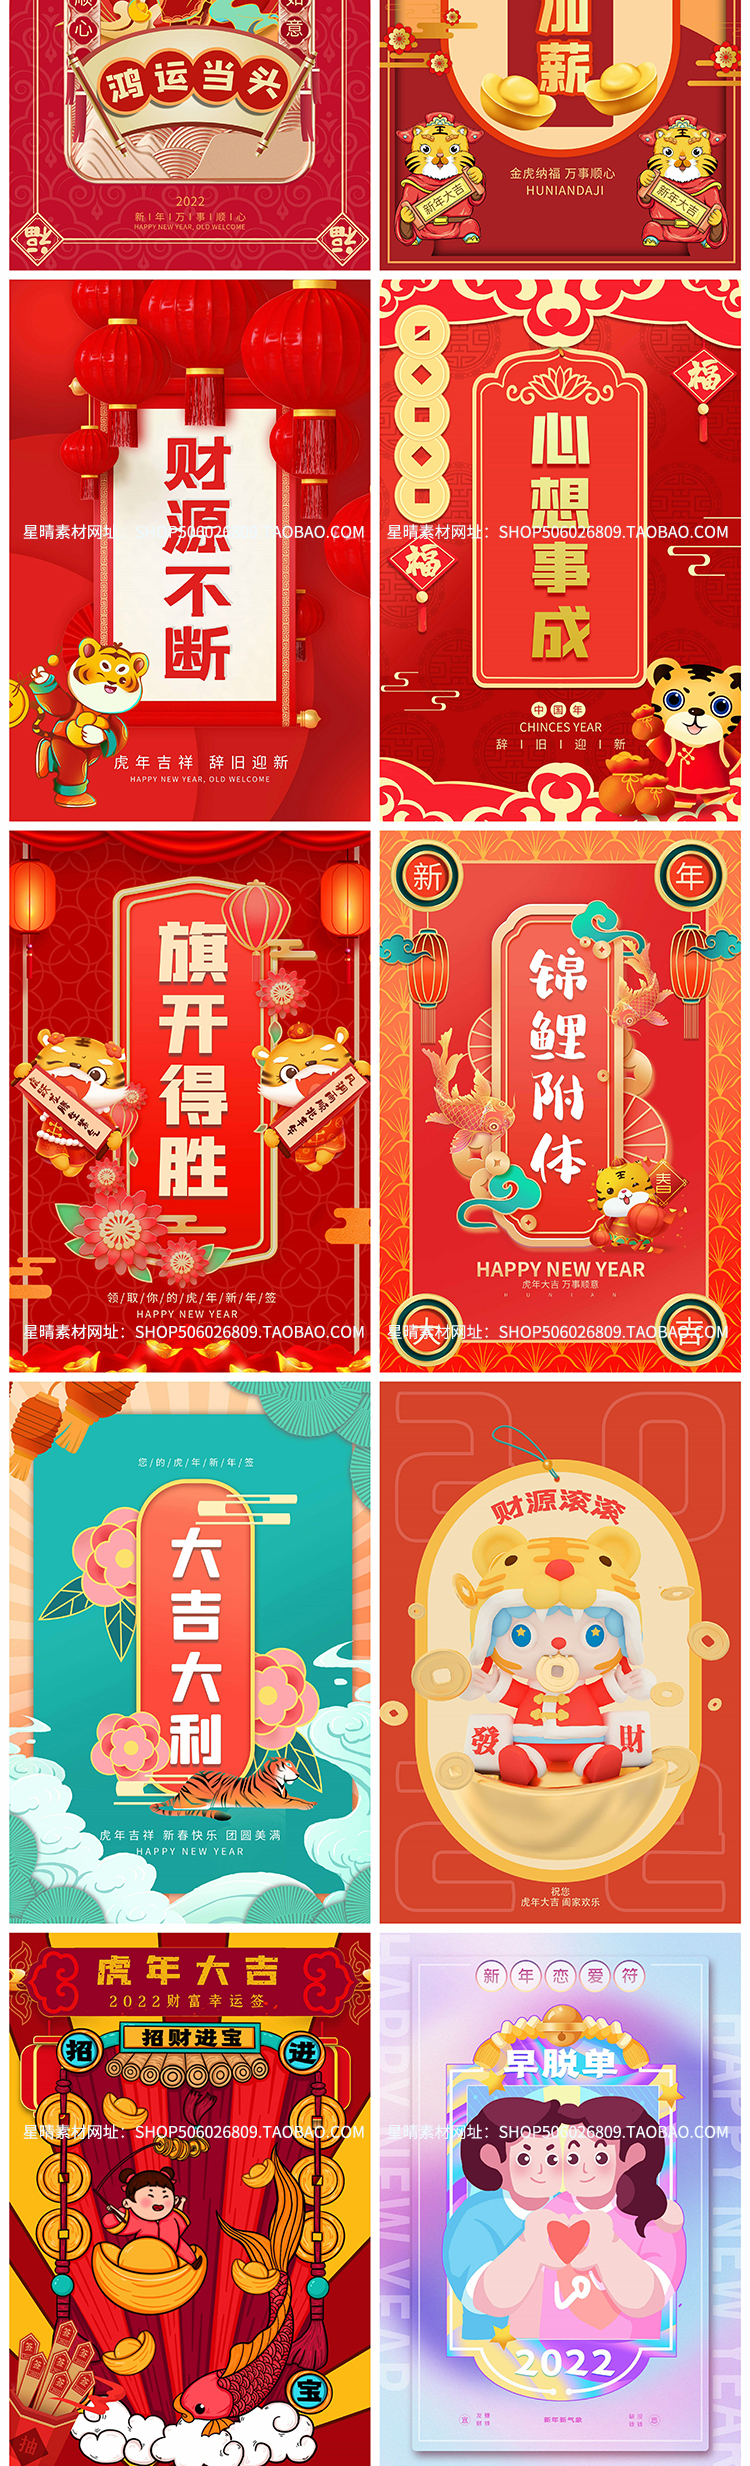 2022虎年春节卡通新年好运祝福语psd设计素材插图1